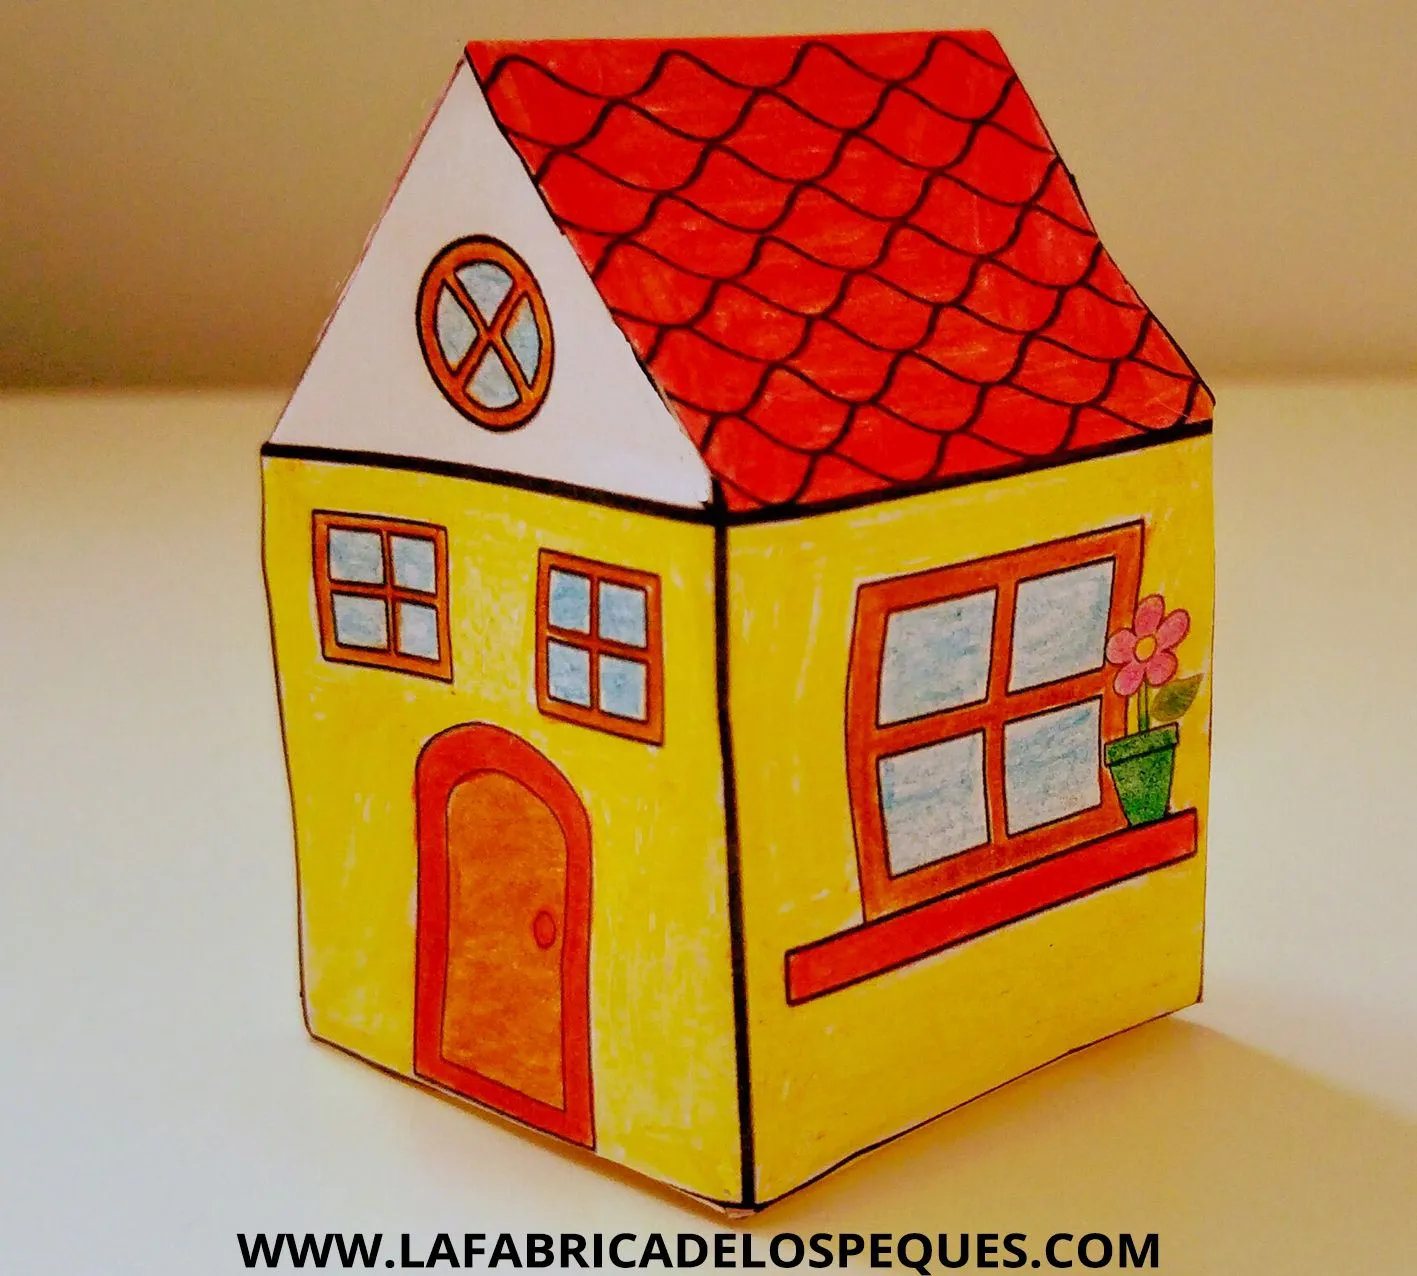 Manualidades infantiles: Casas imprimibles - La fábrica de los peques